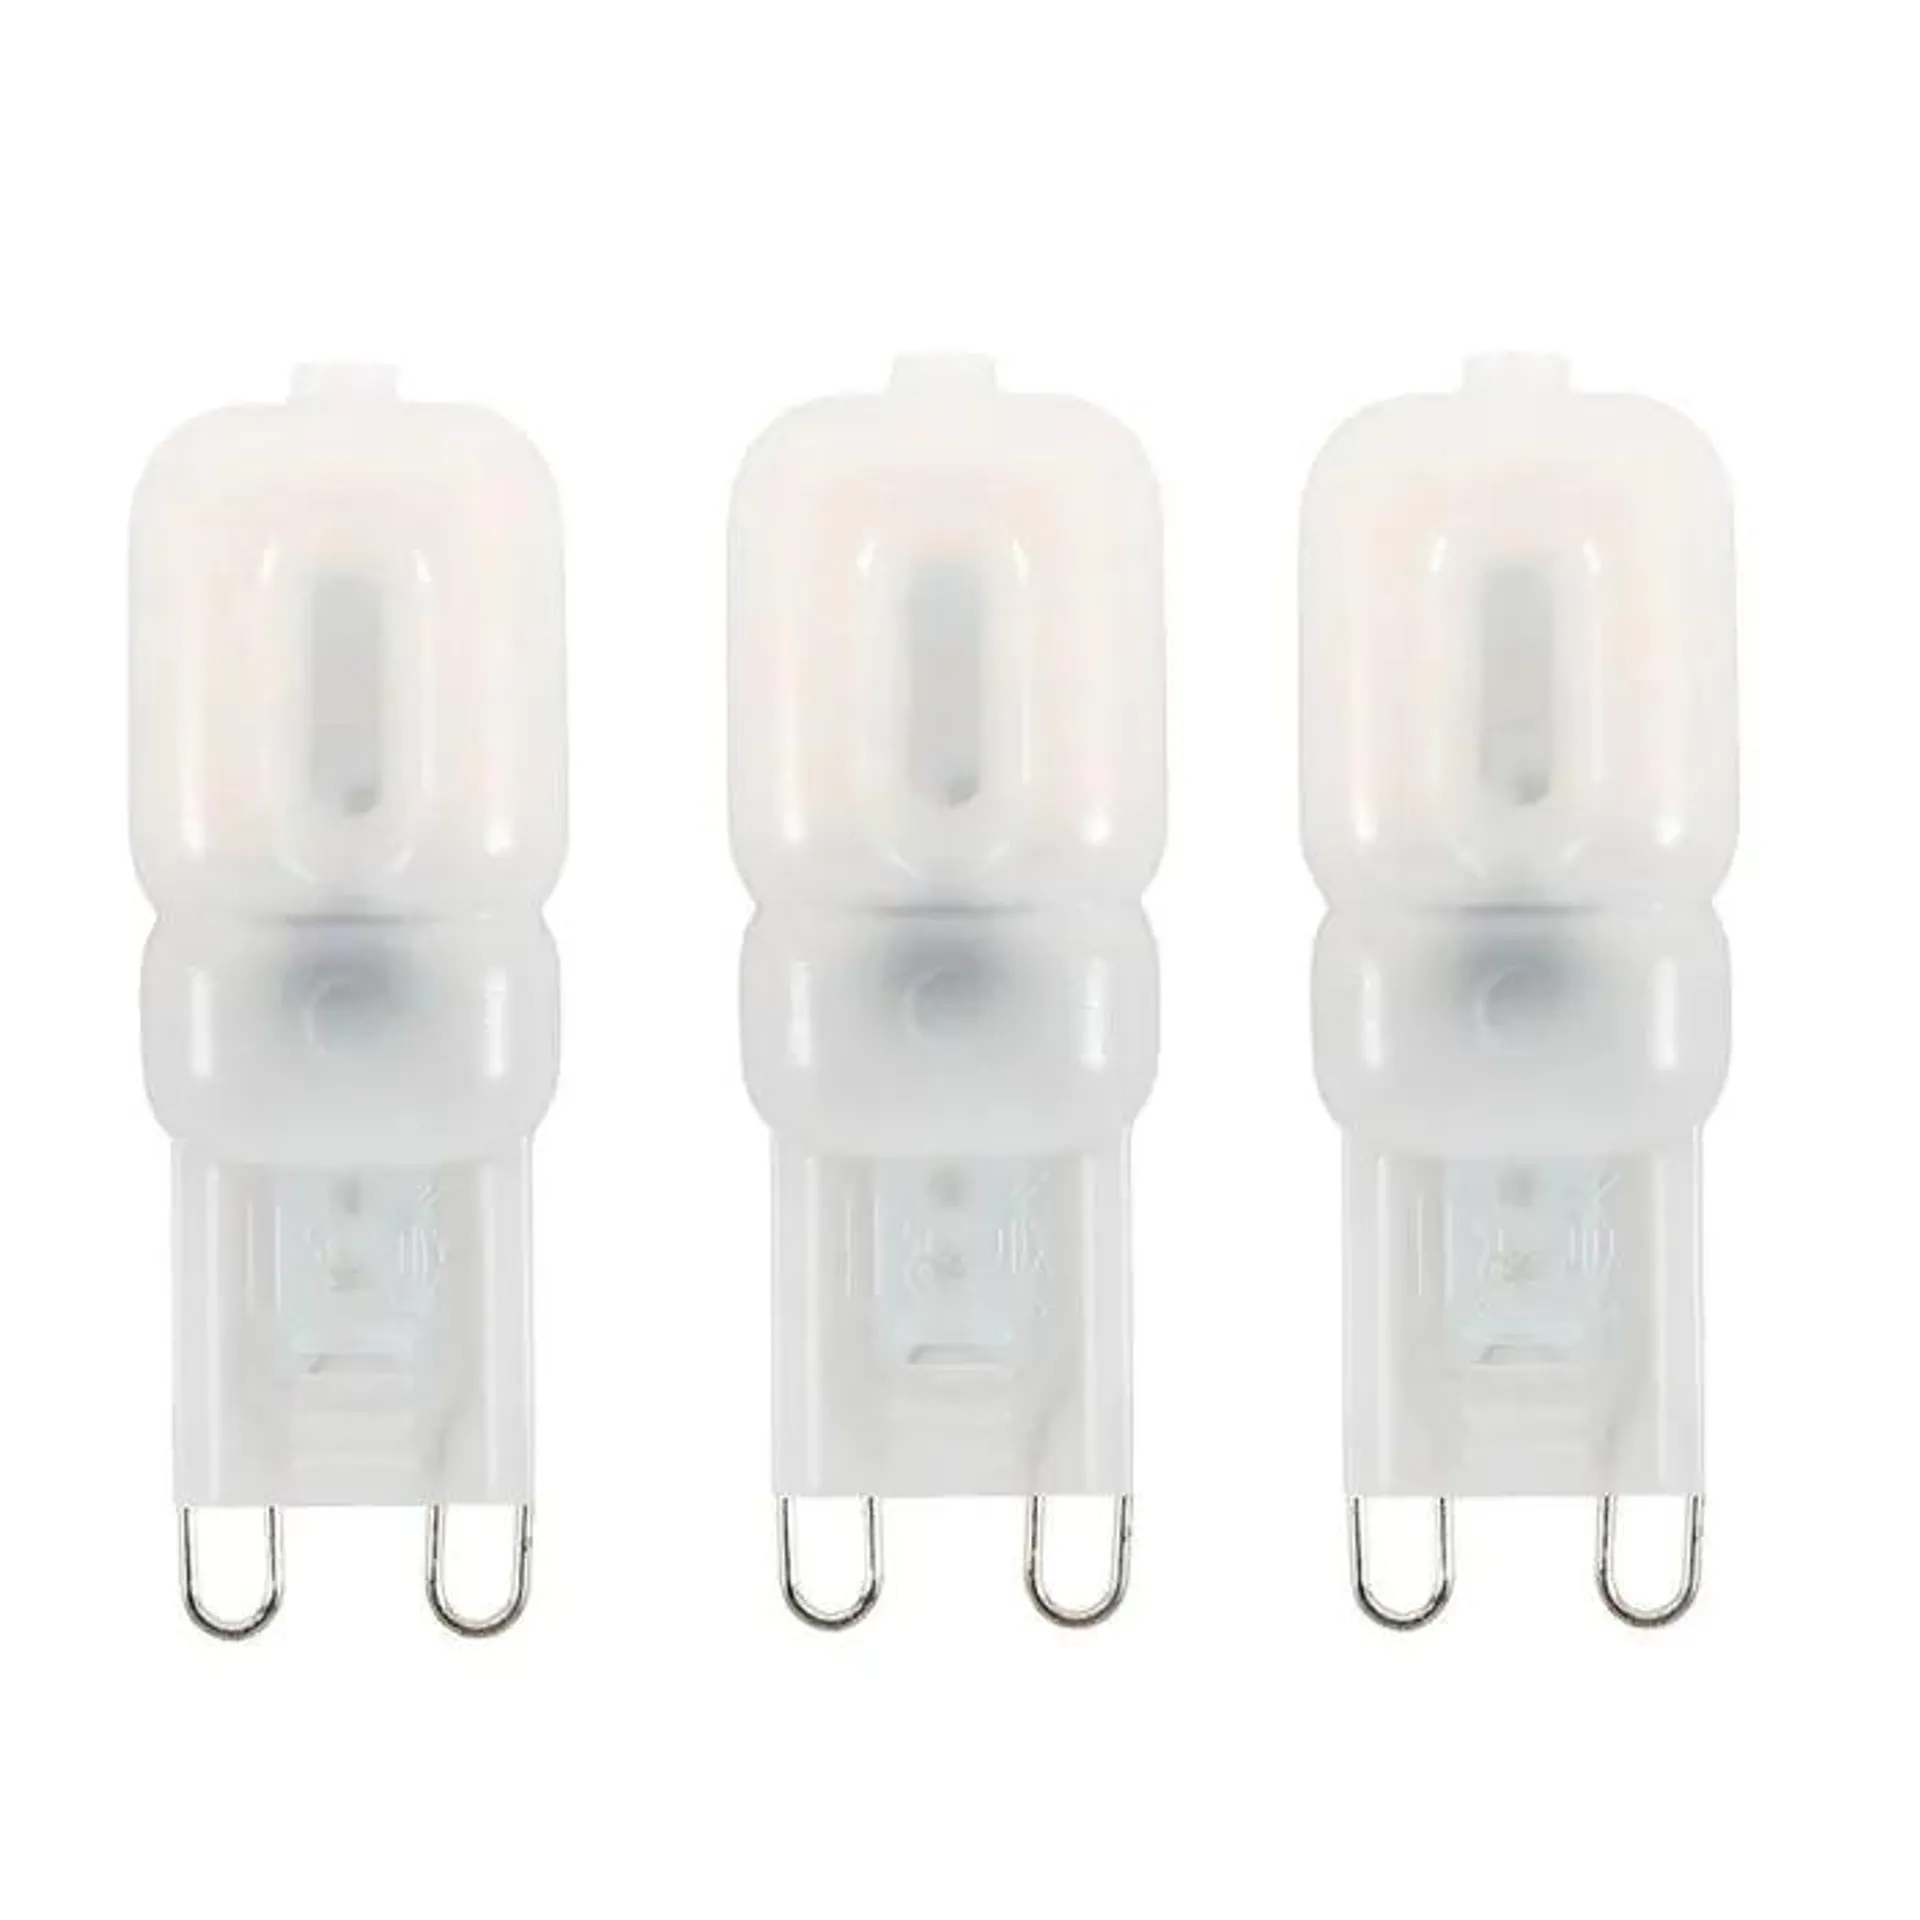 3 Pack of 2 Watt G9 LED Capsule Lamps 3000K, Warm White